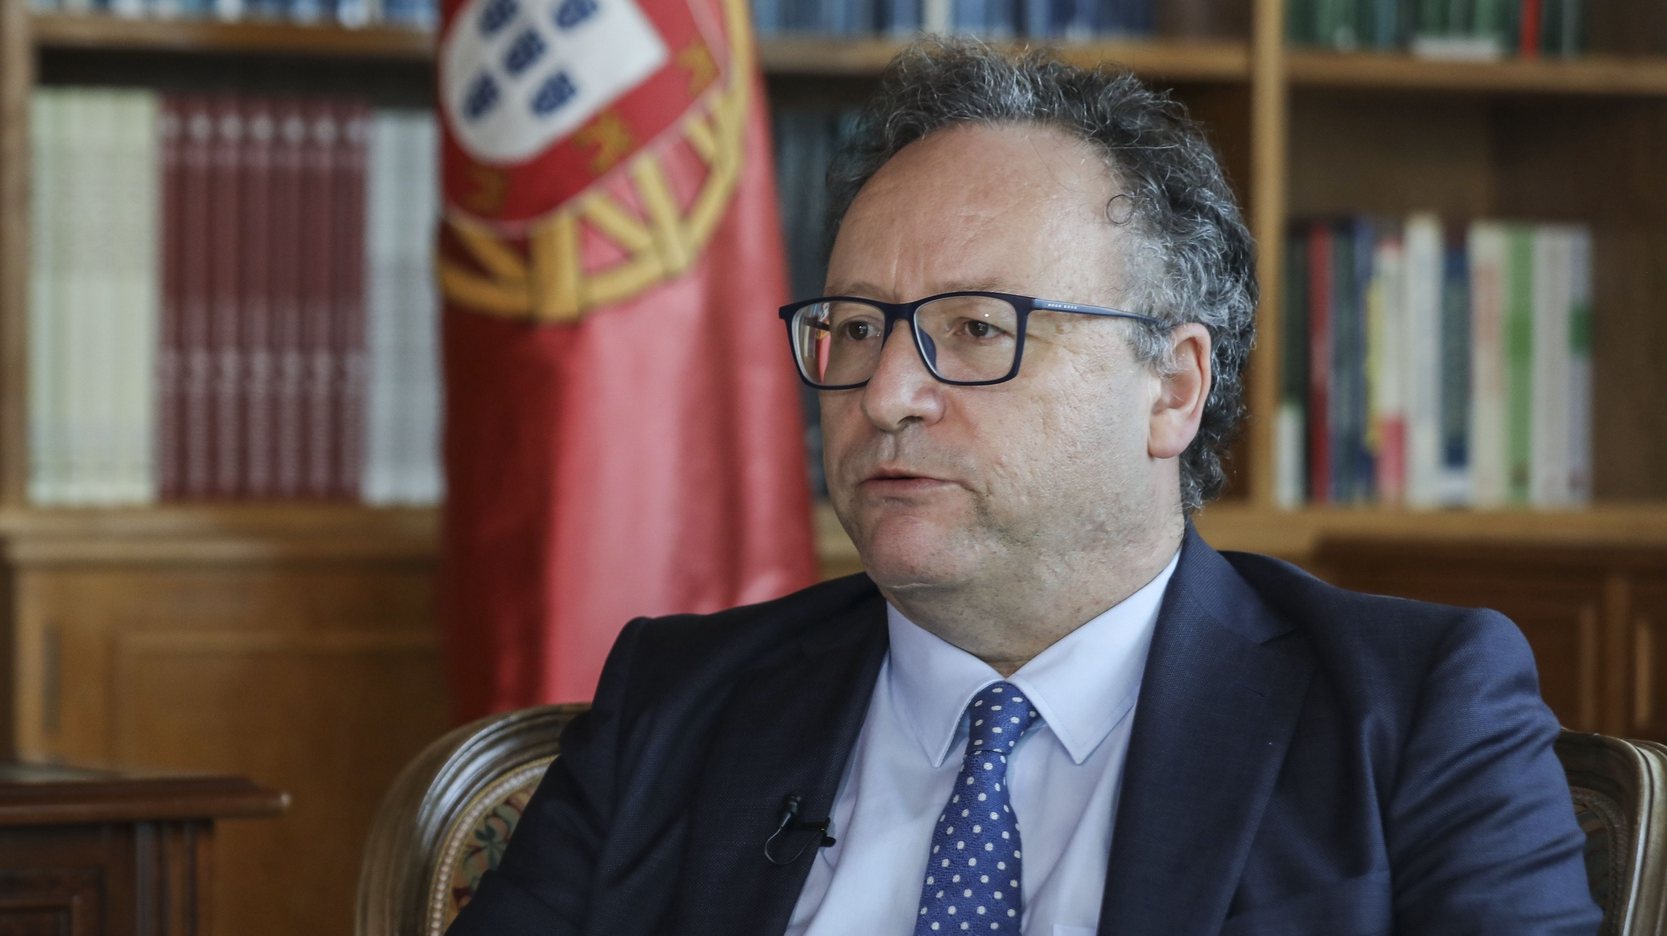 Entrevista ao presidente do Conselho Económico e Social, Francisco Assis na sede do mesmo em Lisboa, 6 de julho de 2021. (ACOMPANHA TEXTO DE 11 DE JULHO DE 2021). MIGUEL A. LOPES/LUSA